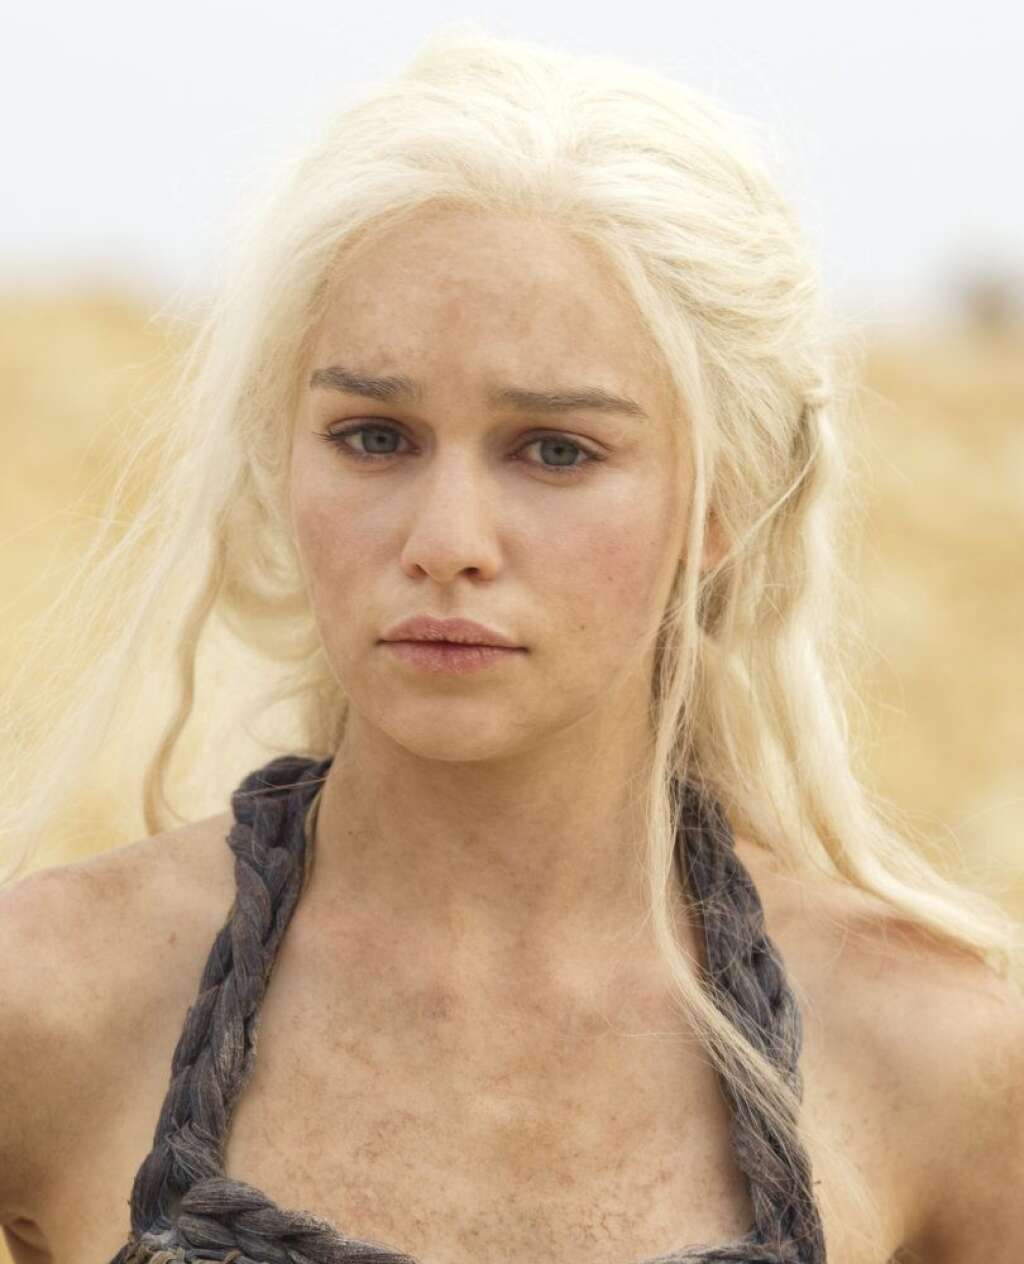 Daenerys Targaryen - Emilia Clarke as Daenerys Targaryen.